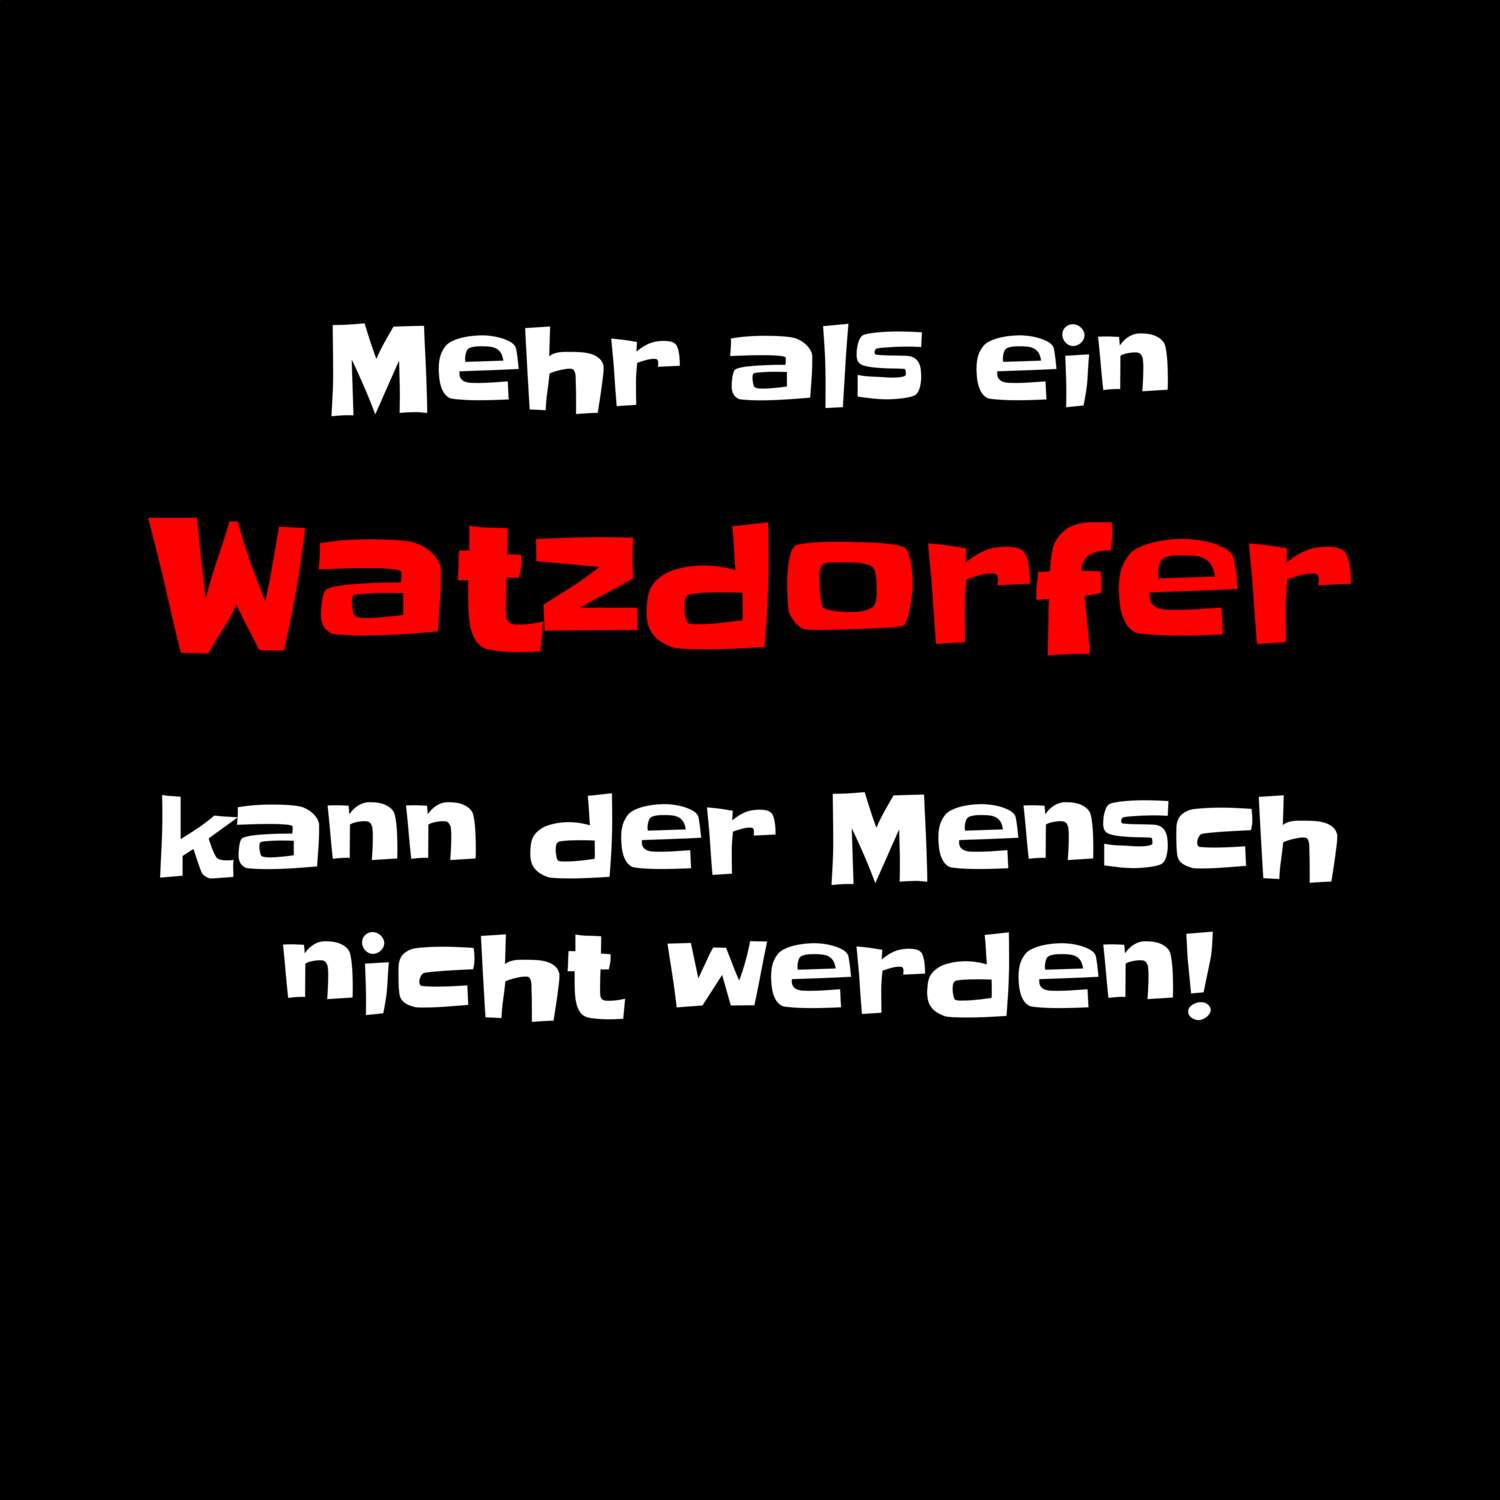 Watzdorf T-Shirt »Mehr als ein«